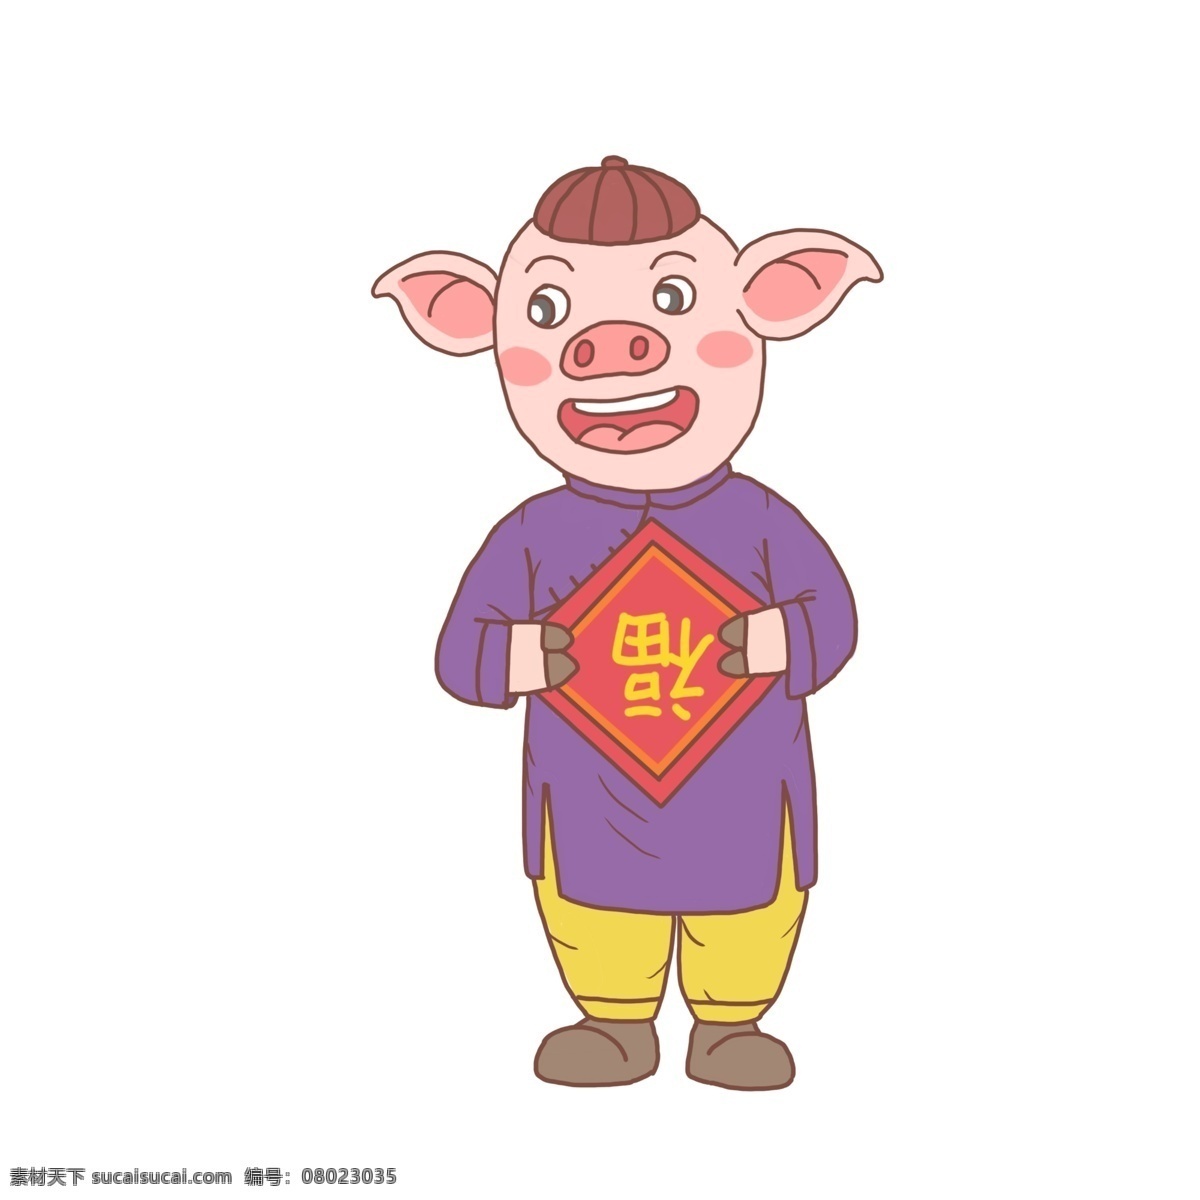 猪年 卡通 手绘 猪 人 福字 2019年 小猪 卡通猪